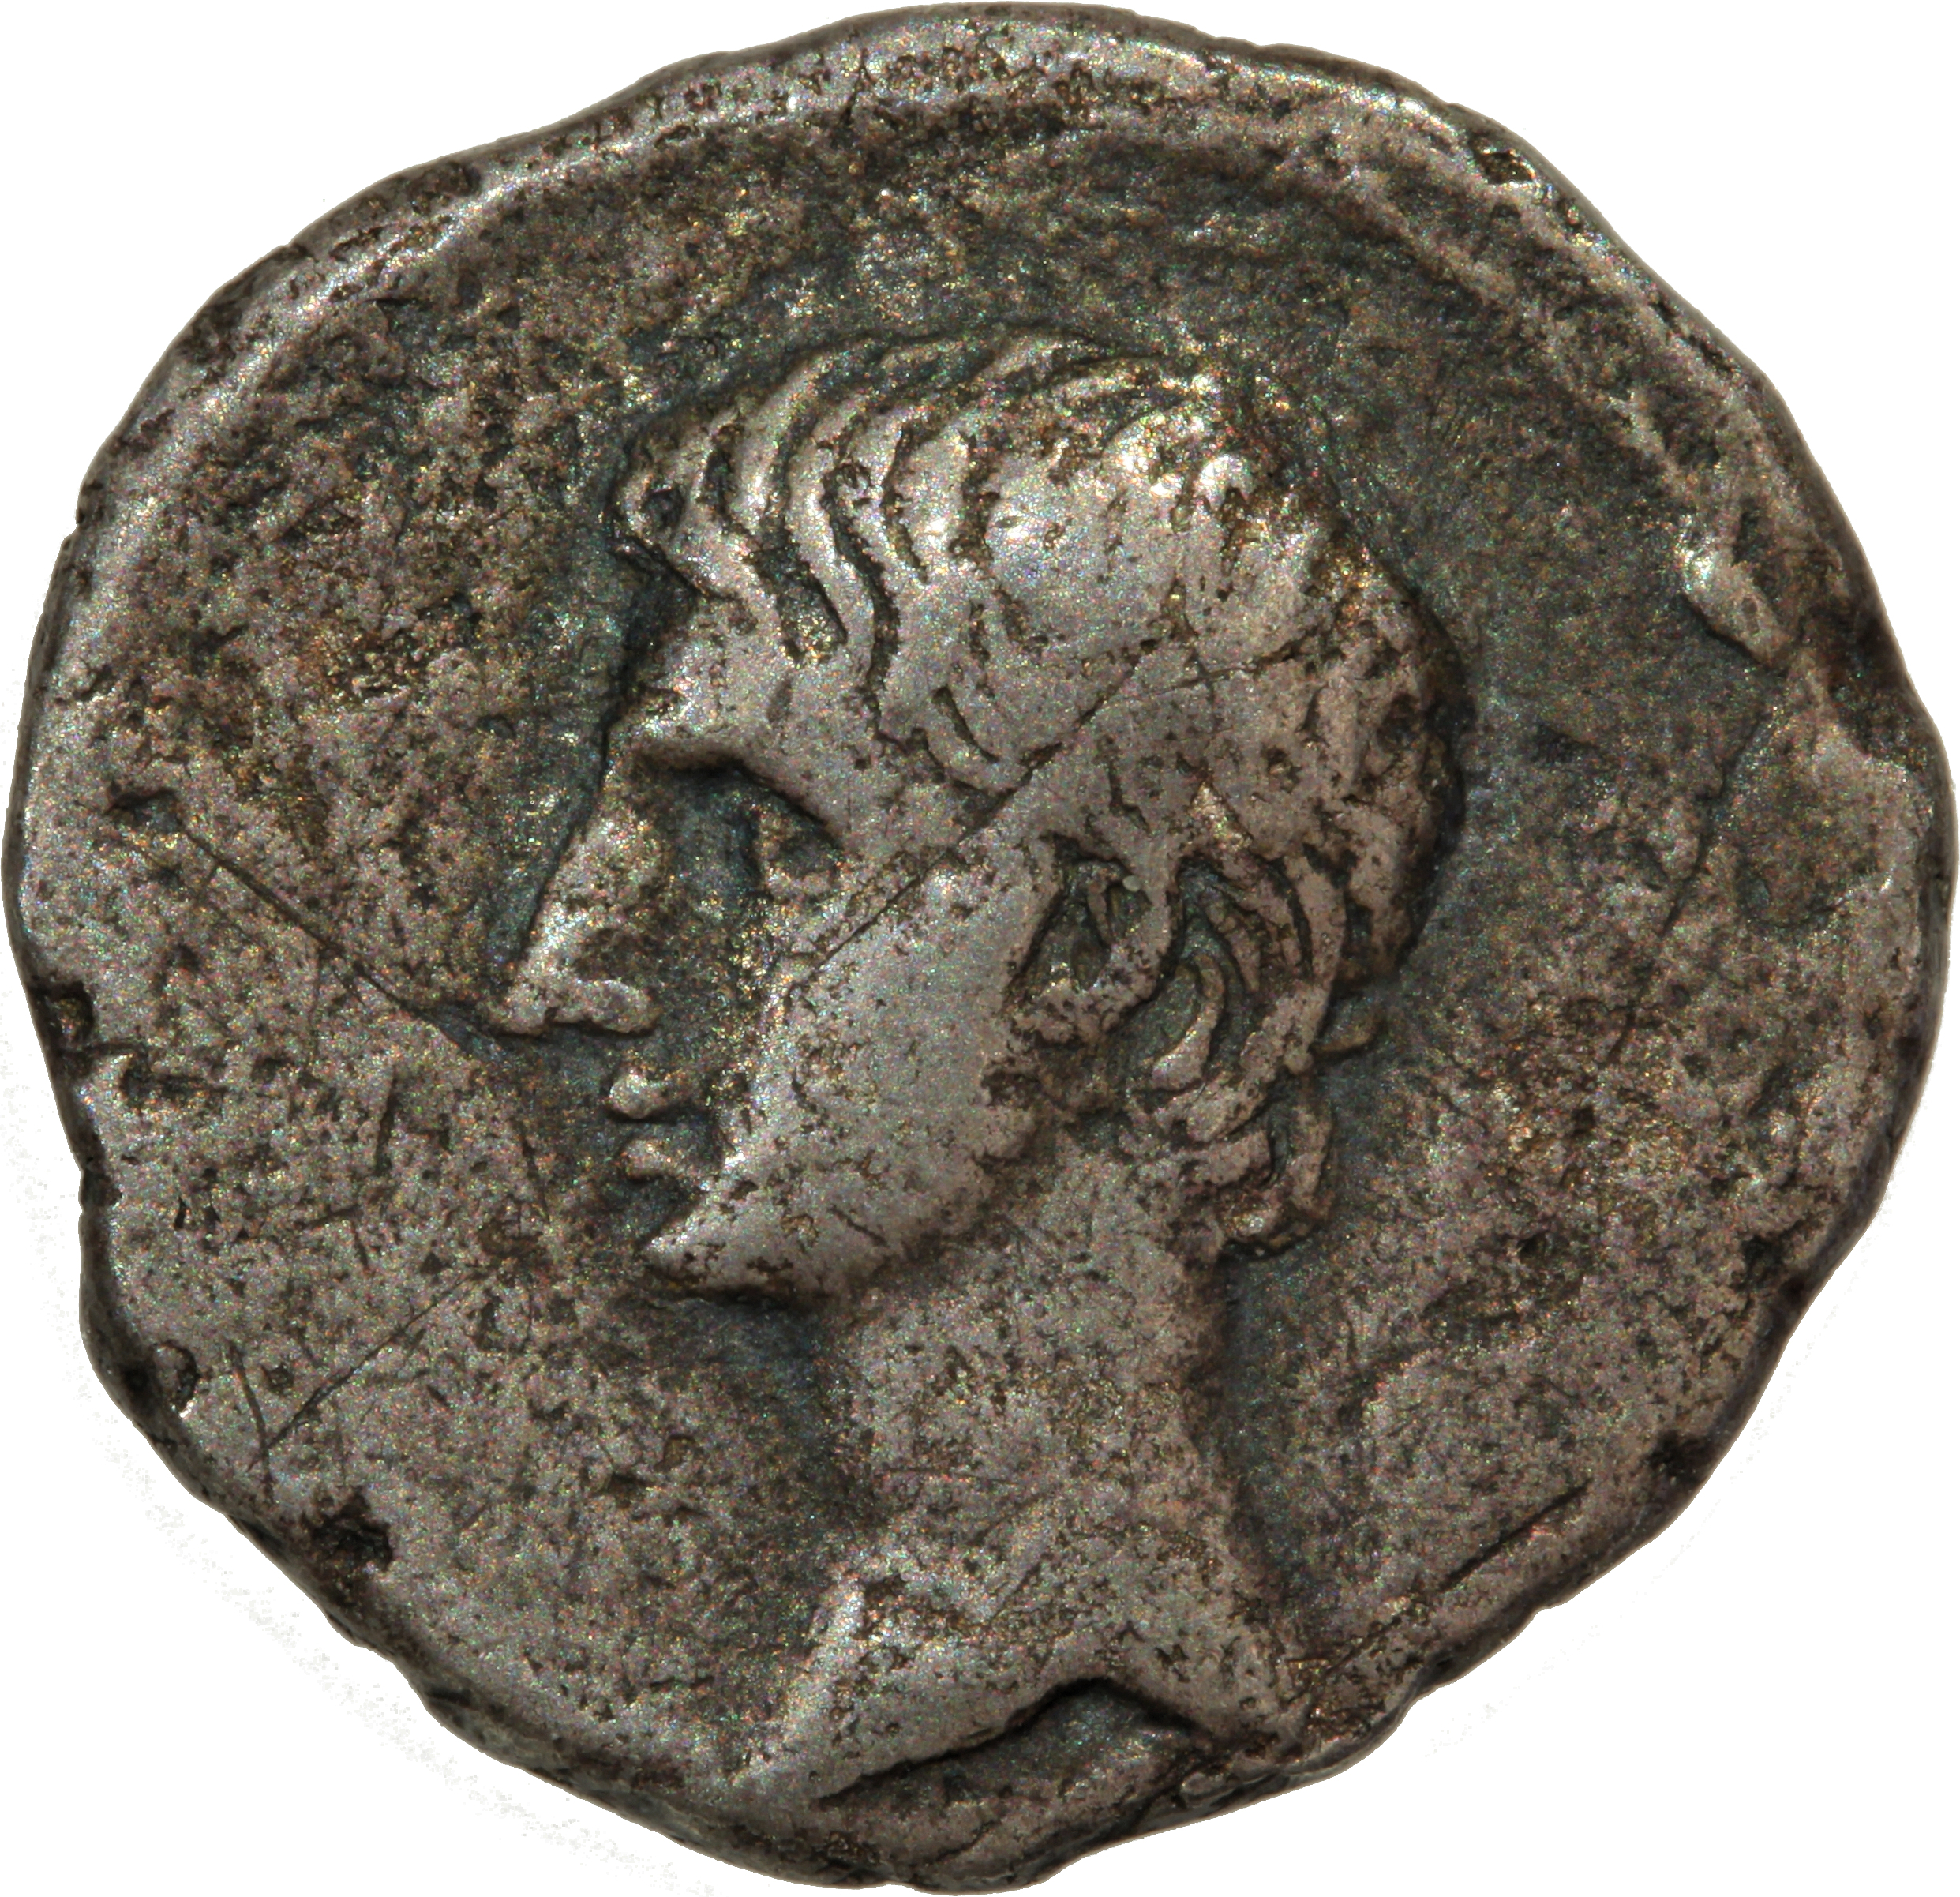 Octavian (Römische Republik)